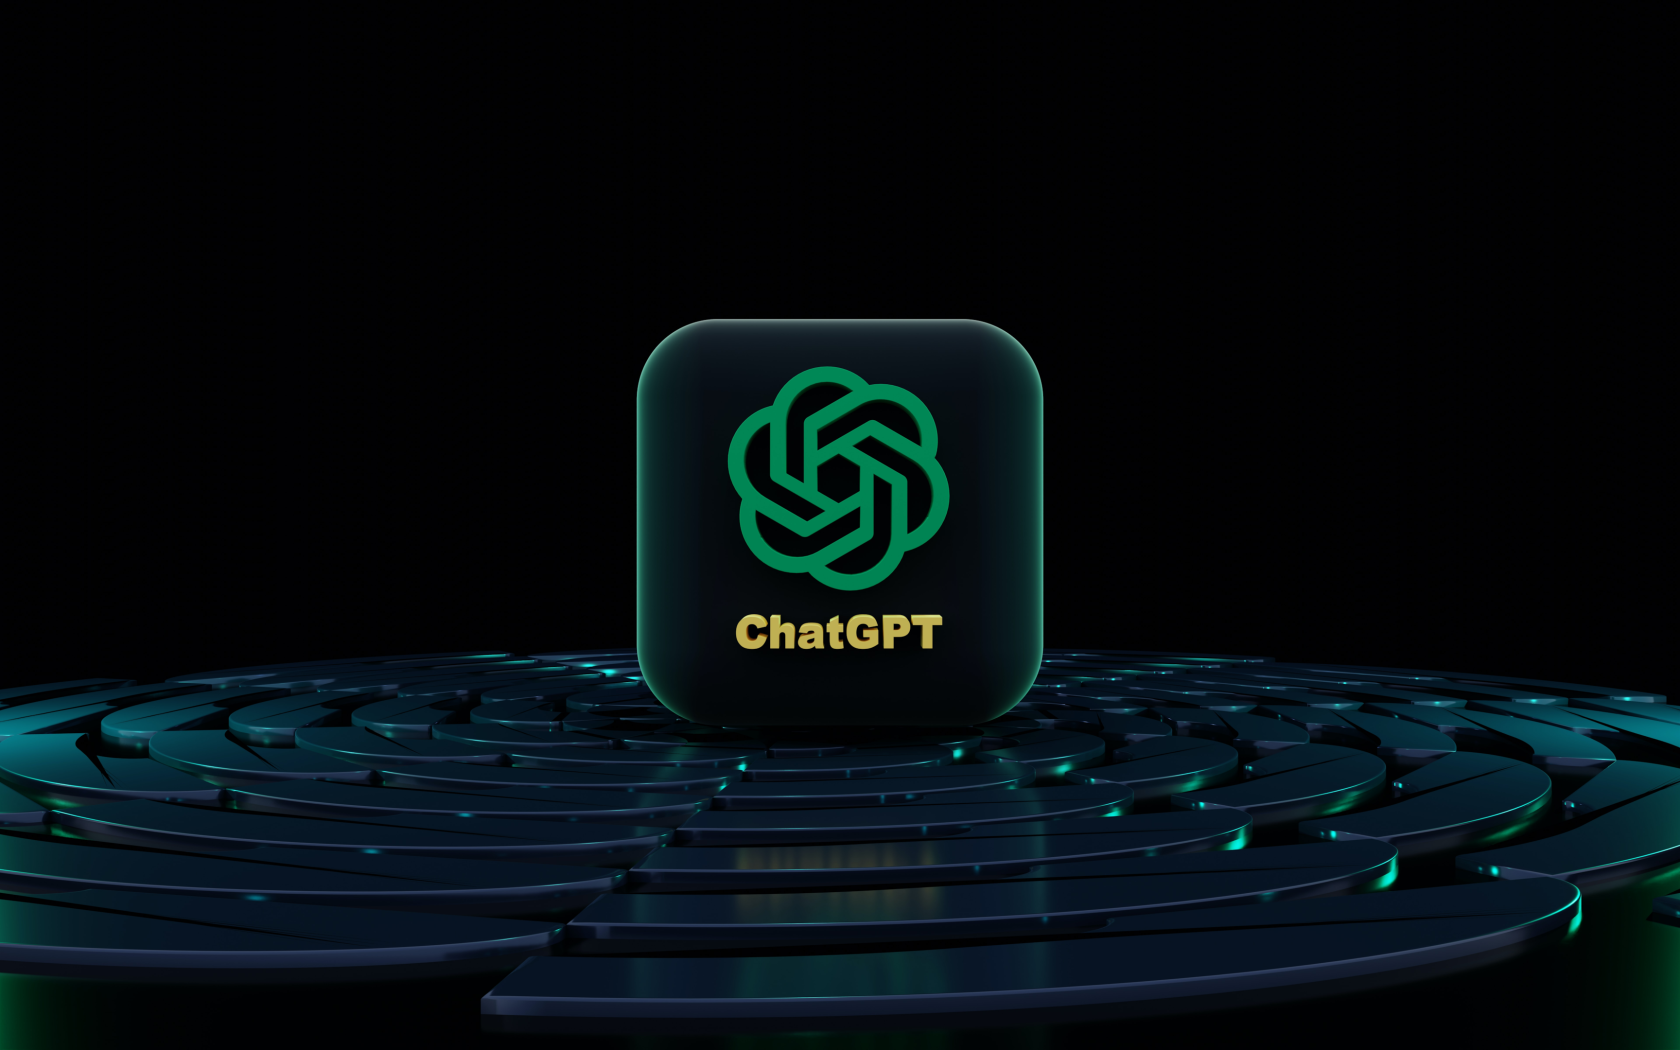 ChatGPT Plusには価値がありますか?  確認してみましょう